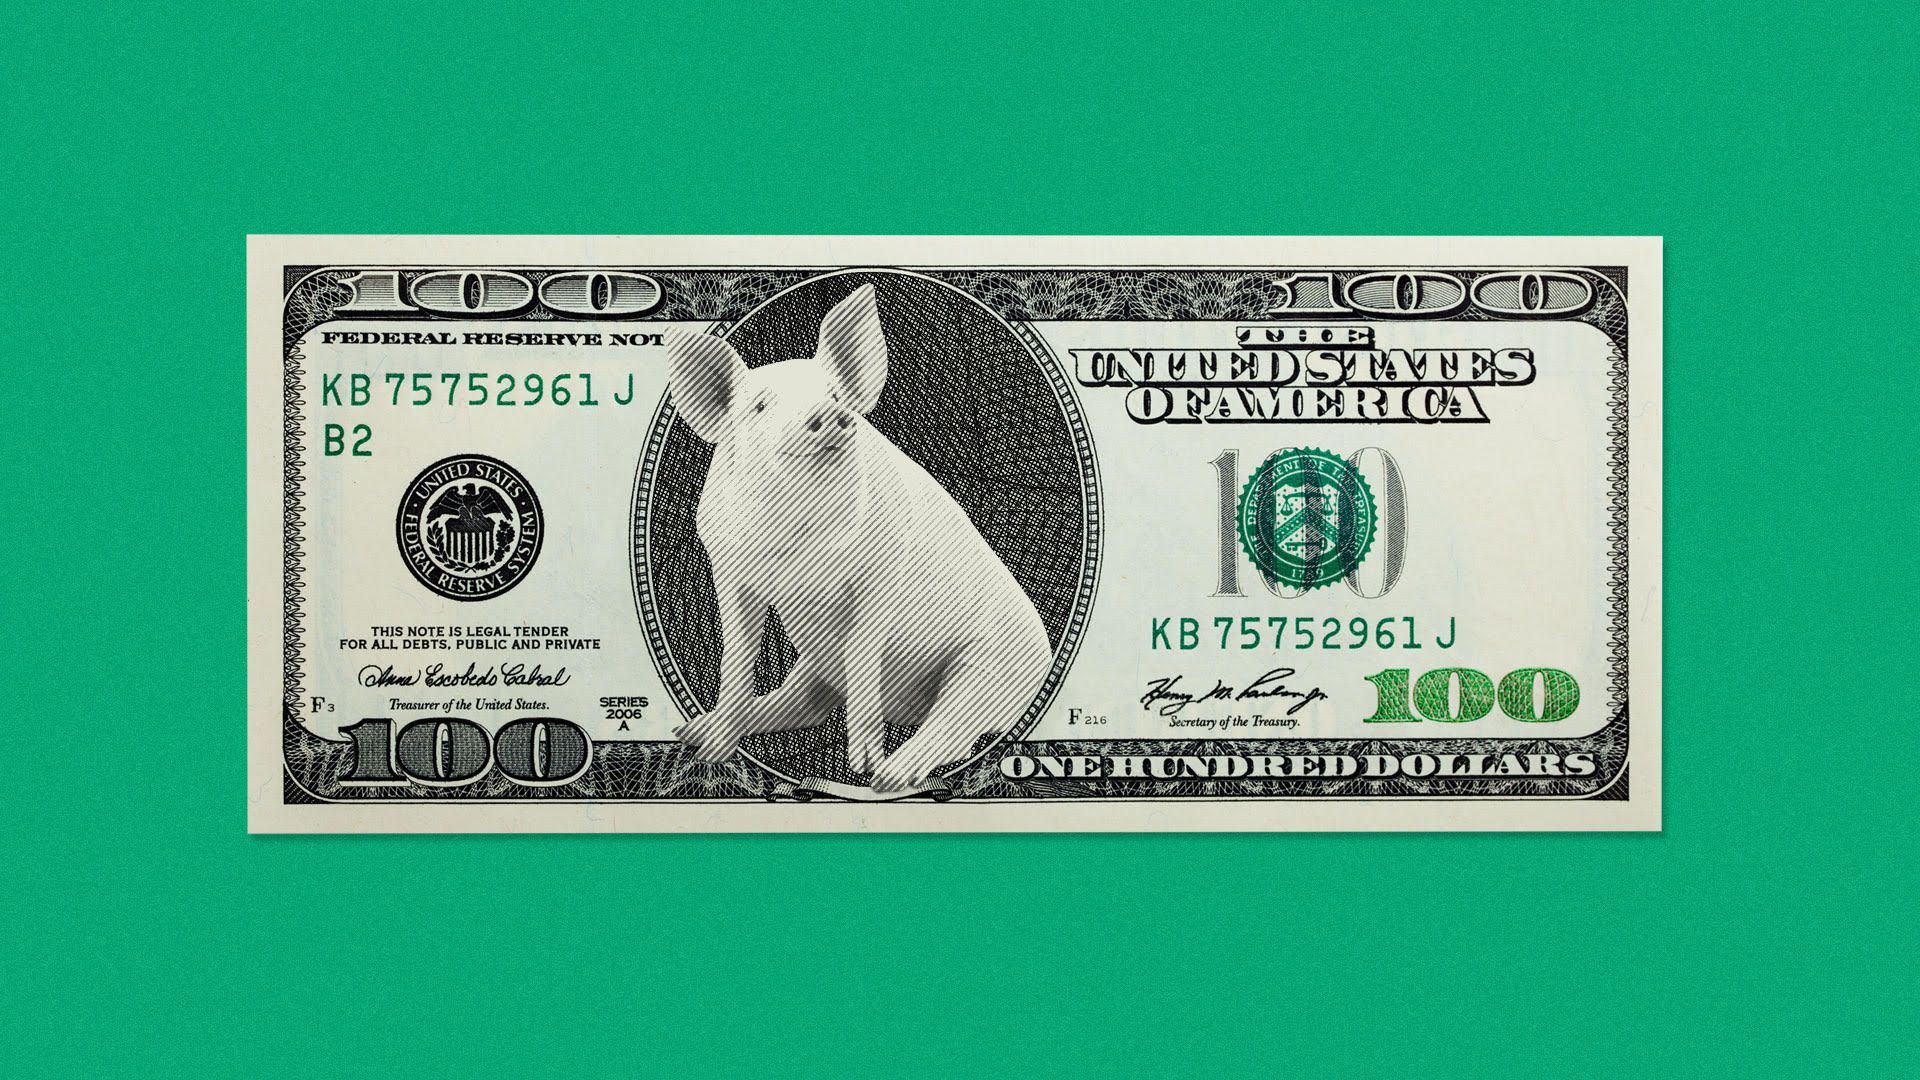 Illustration of a pig on a $100 bill